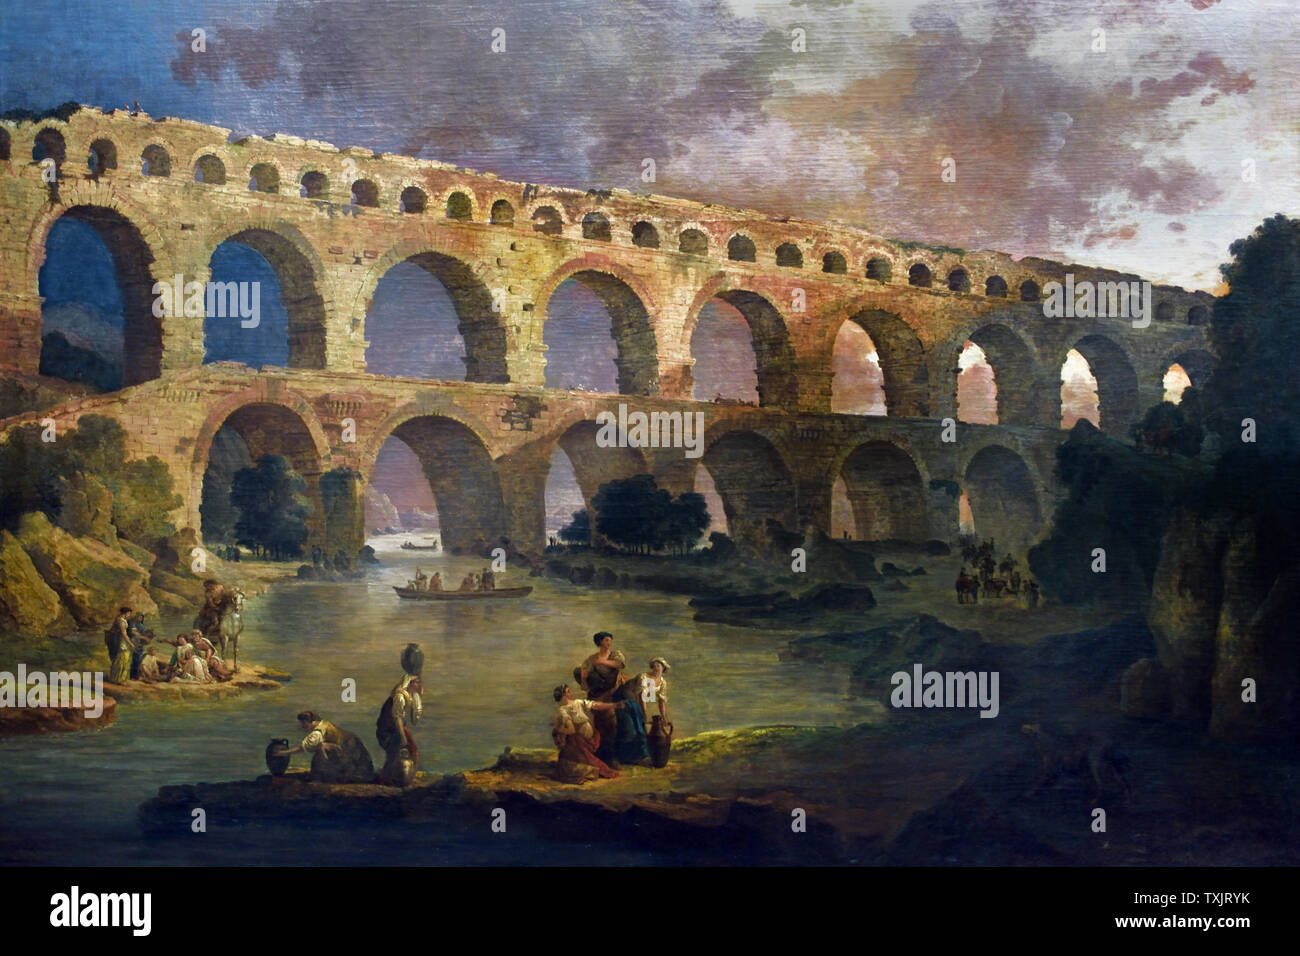 Le Pont du Gard - Gard die Brücke 1787 von Hubert Robert 1733 - 1808 (Lackiert für einen Salon im Schloss von Fontainebleau (Ile-de-France). Robert, berühmt für seine Ansichten der Italienischen Denkmäler, Gemälde der bekanntesten Überreste des römischen Gallien.) Stockfoto